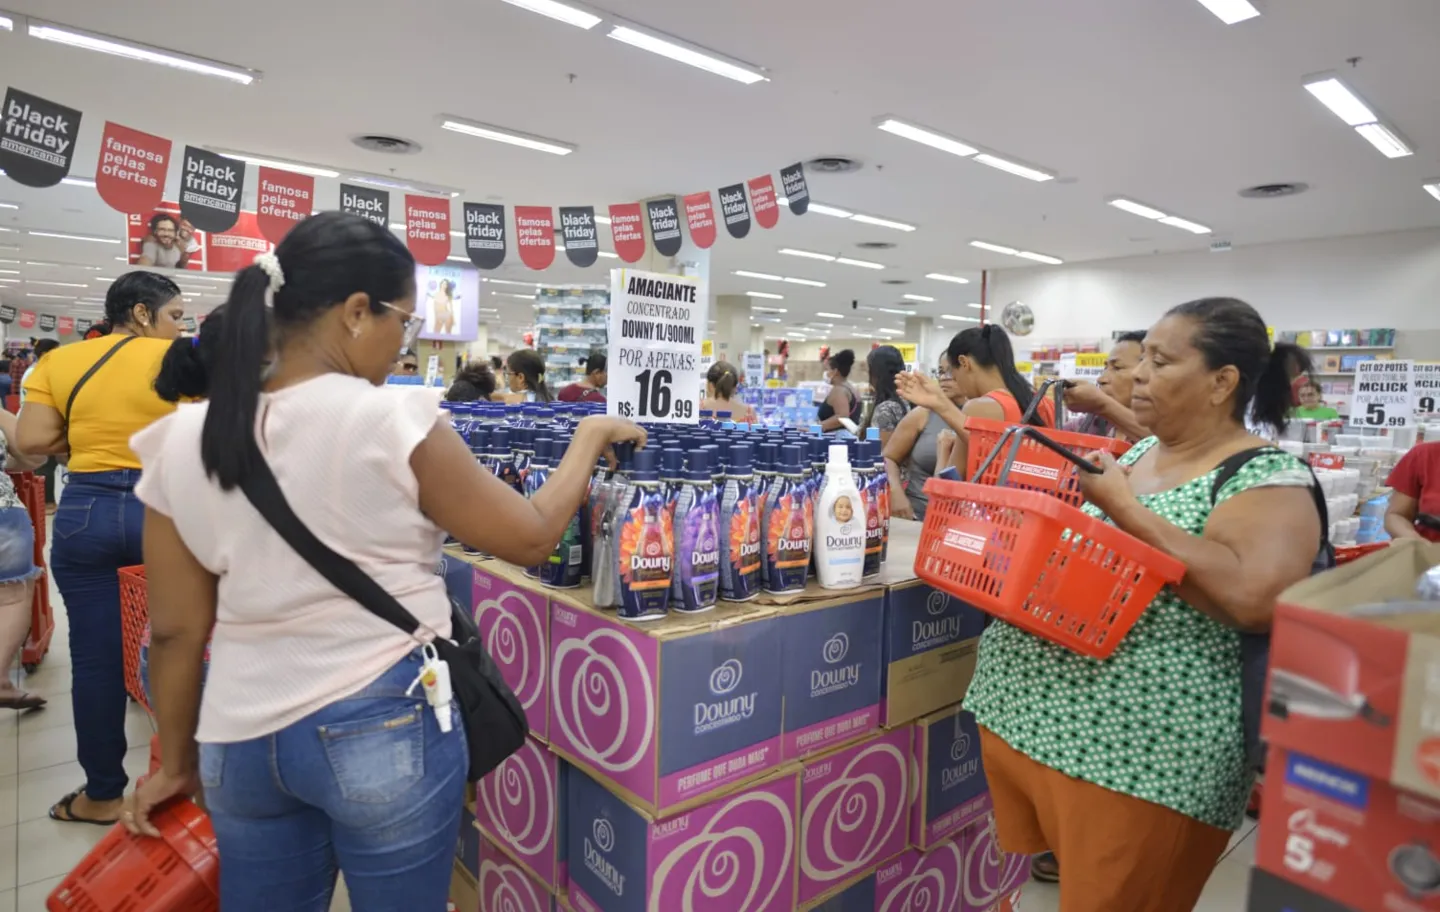 Shopping abre às 6h e recebe grande movimento em Salvador; veja